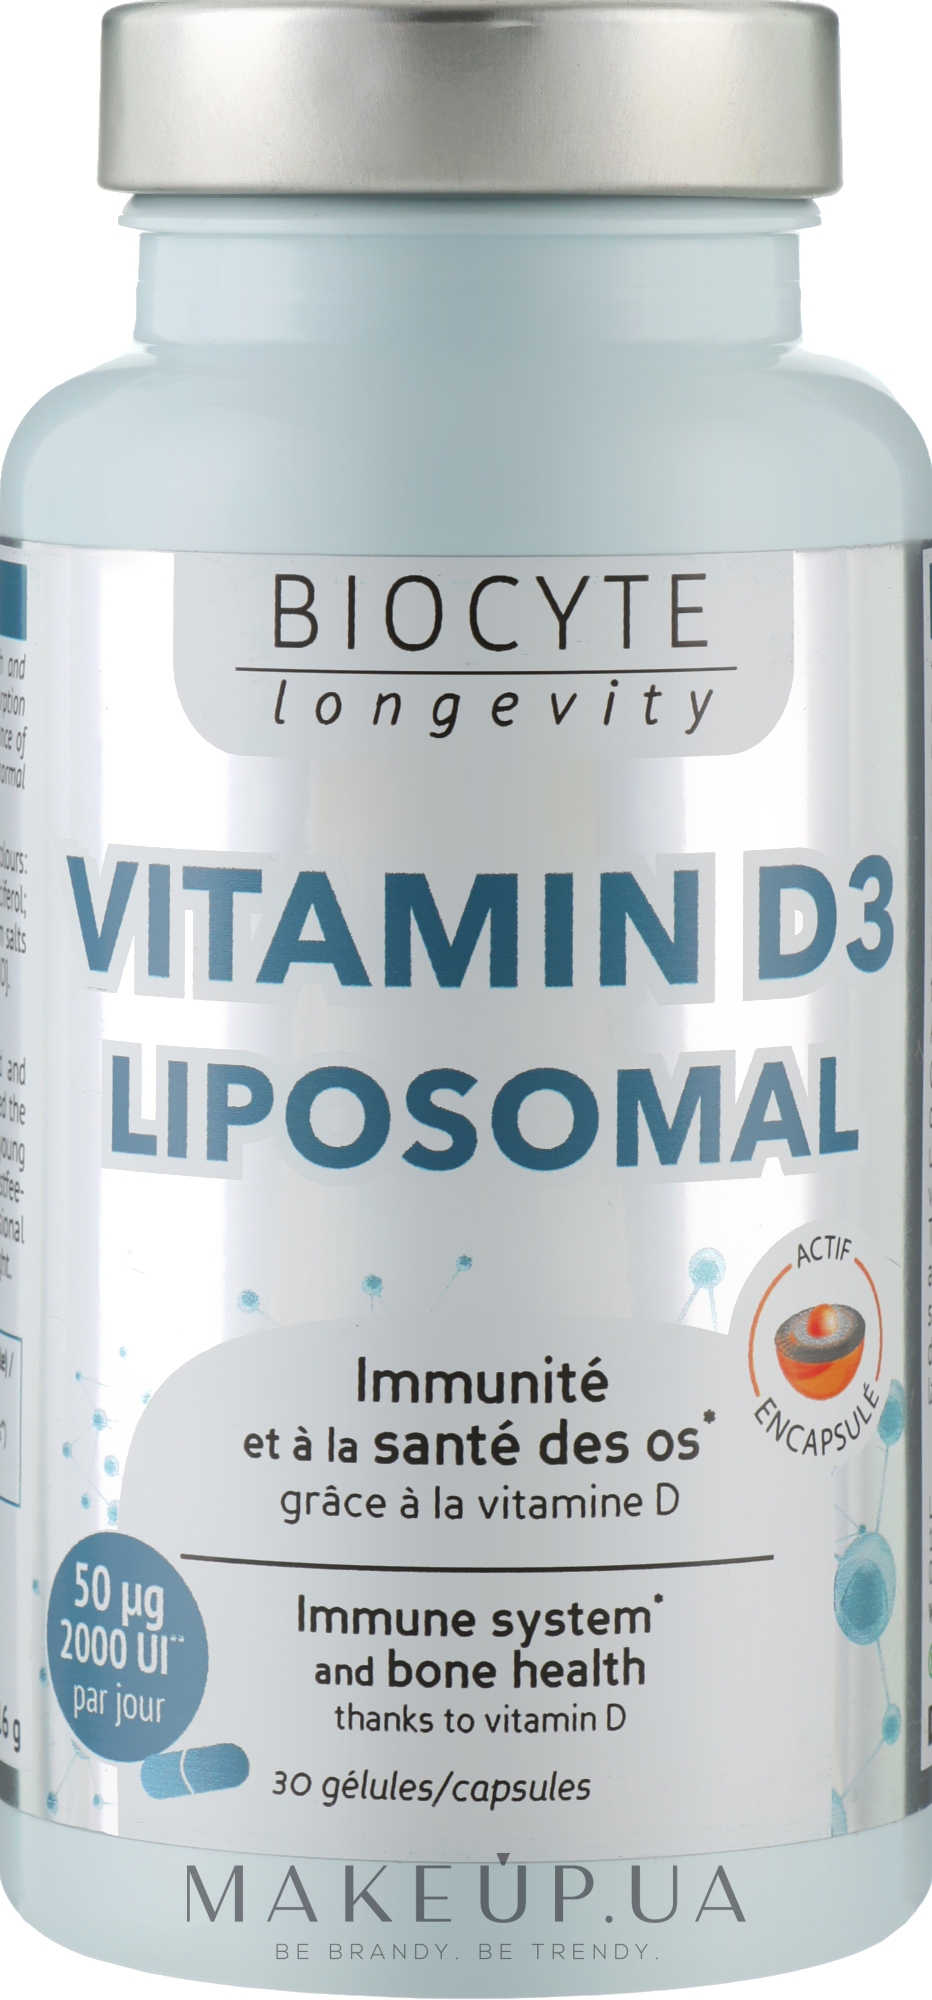 Biocytе Вітамін D3: Підтримка кісток, зубів та імунної системи - Biocyte Vitamine D3 Liposomal — фото 30шт